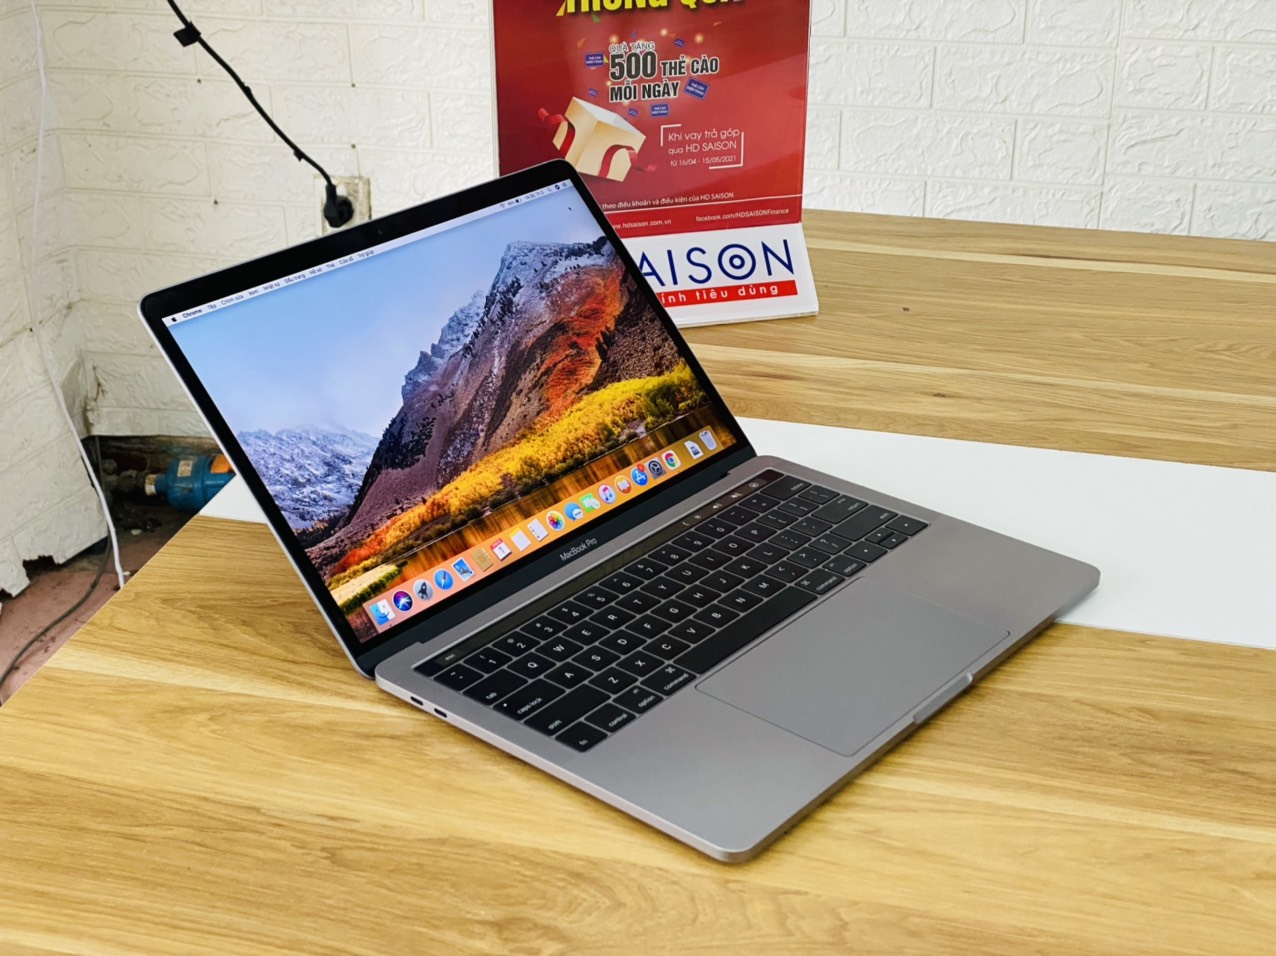 Macbook Pro 13-inch 2016